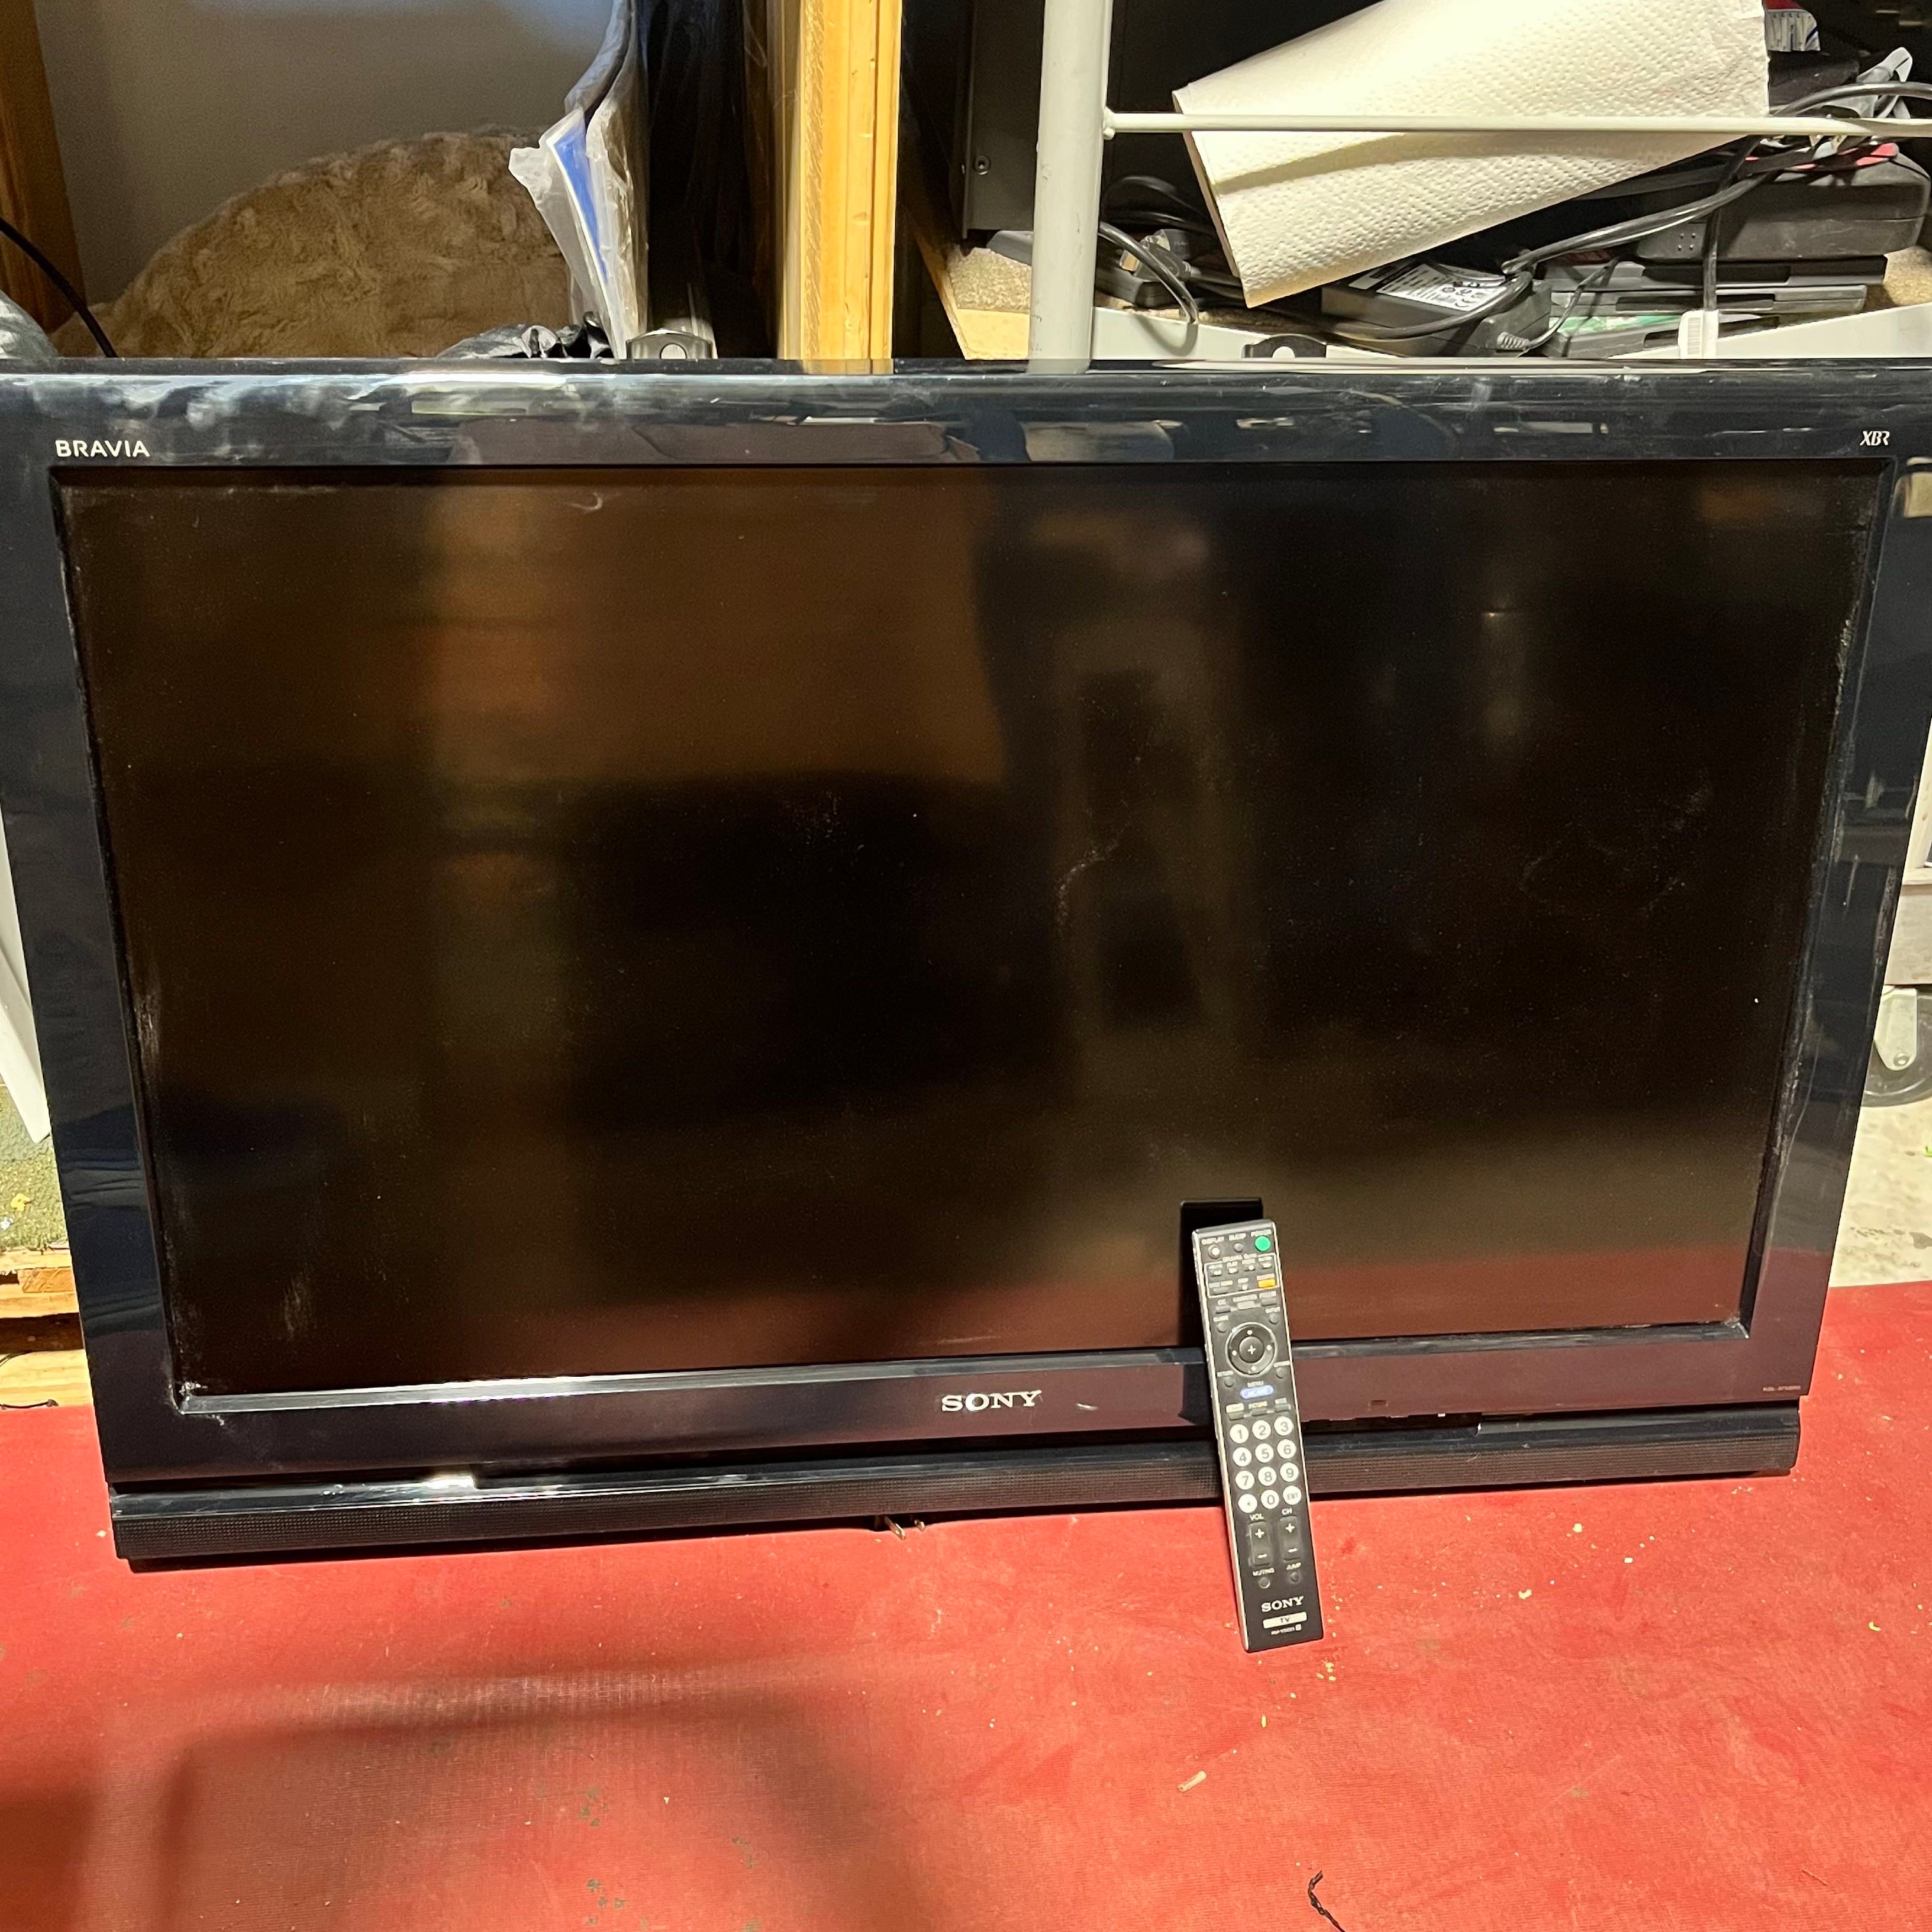 Sony Bravia LCD Digital Color TV KDL-37XBR6